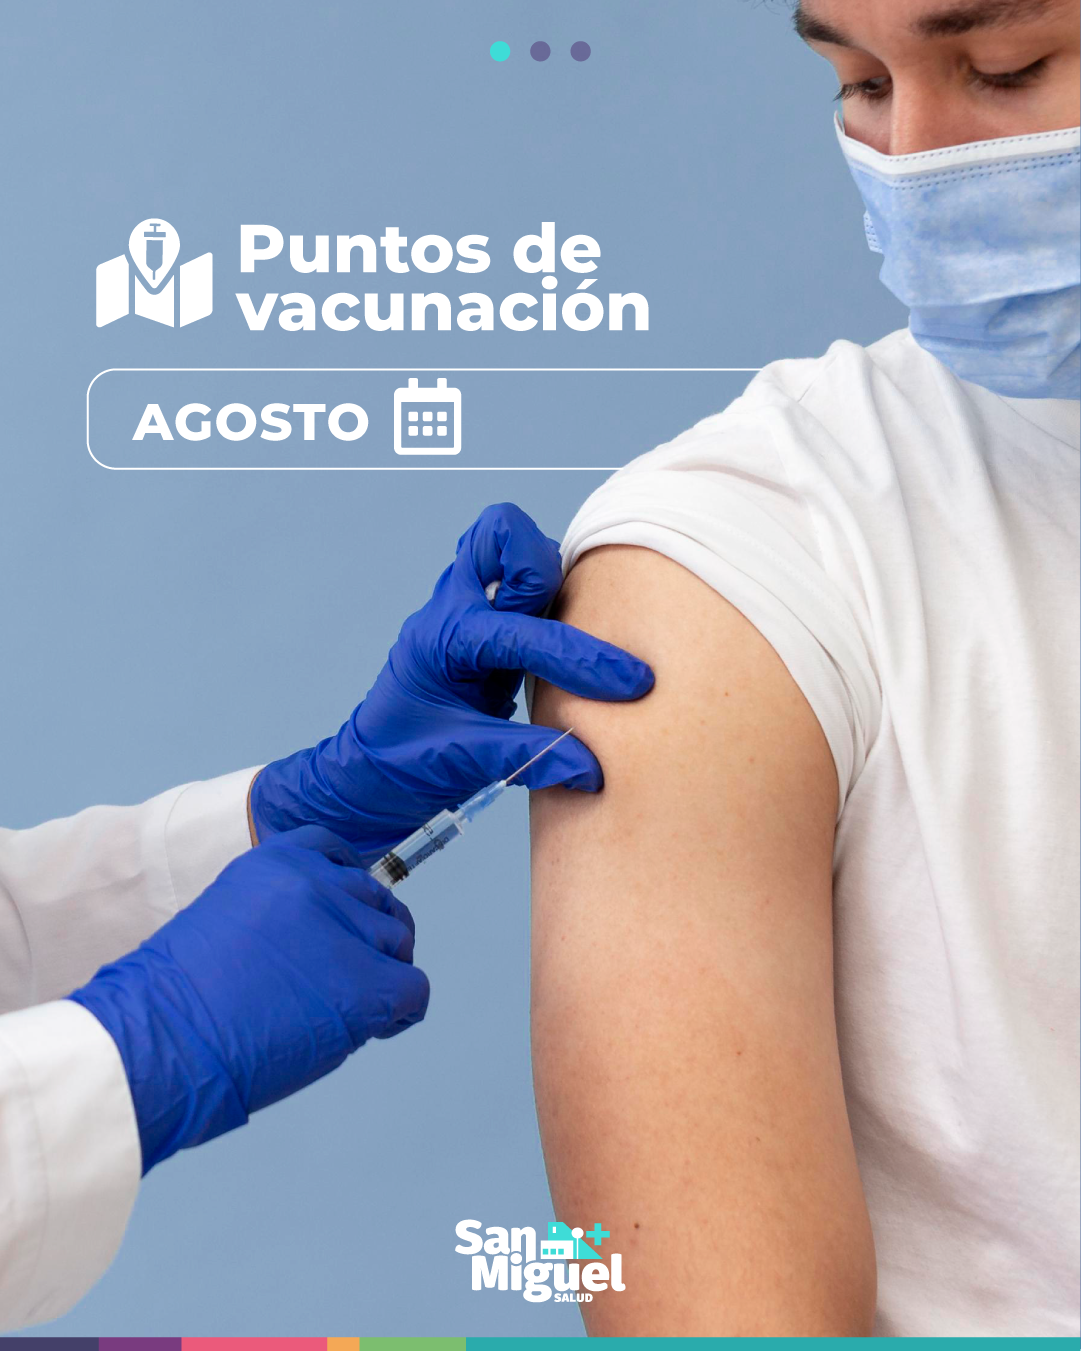 Puntos de Vacunacion_agosto_feed 01